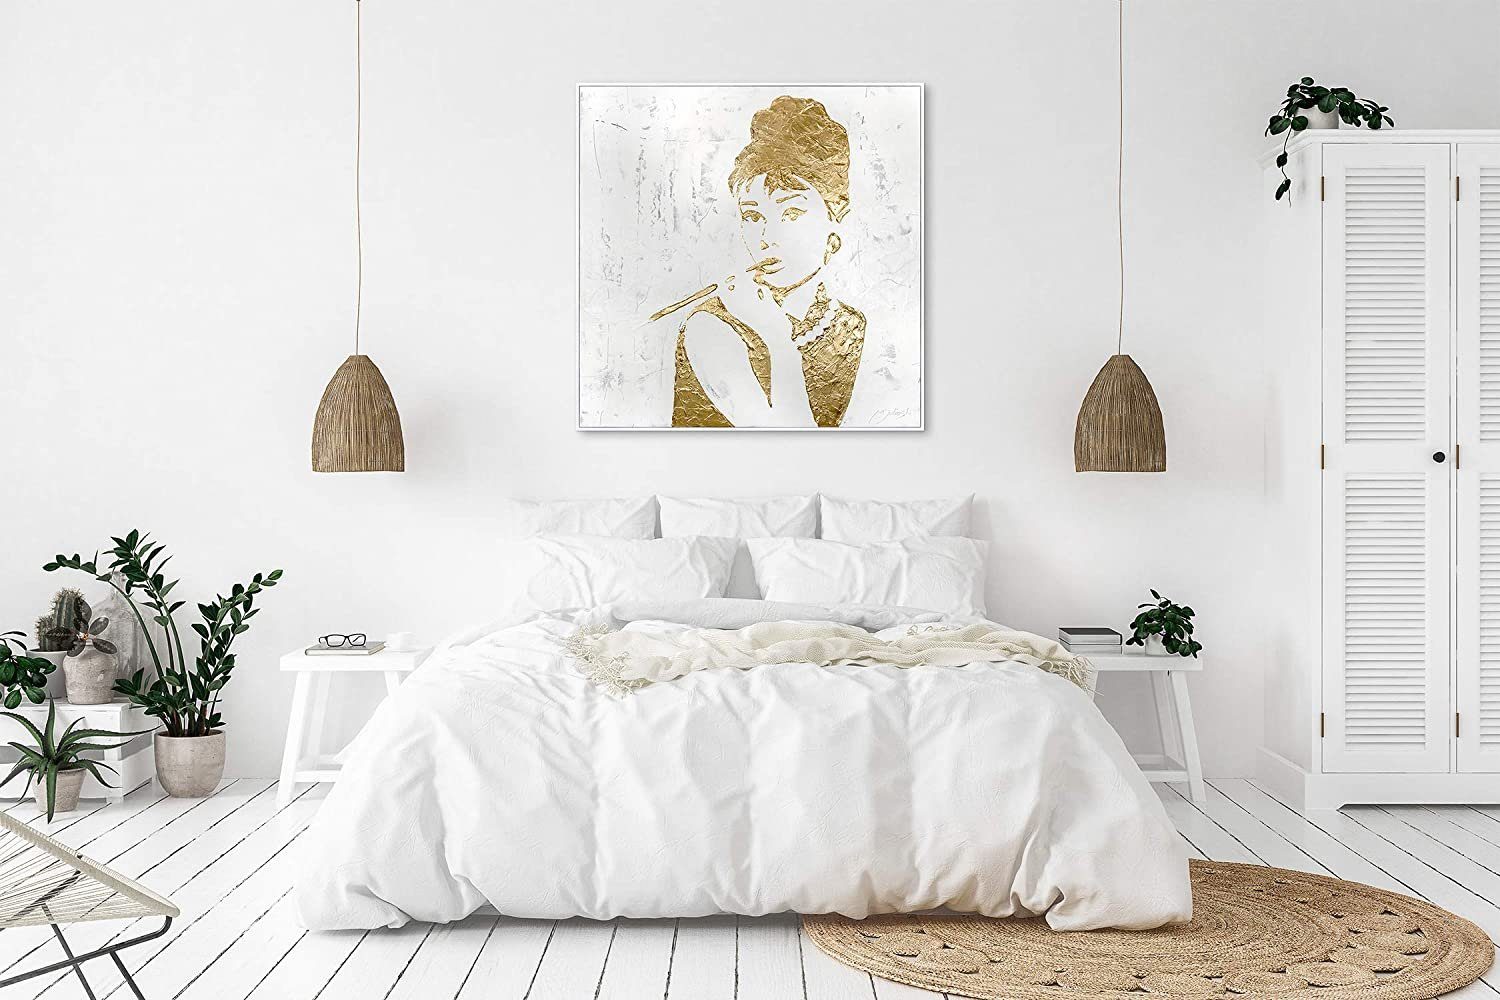 Leinwand Audrey, Bild Audrey Abstraktes YS-Art Handgemalt Rahmen mit Hepburn Gold Menschen, Gemälde